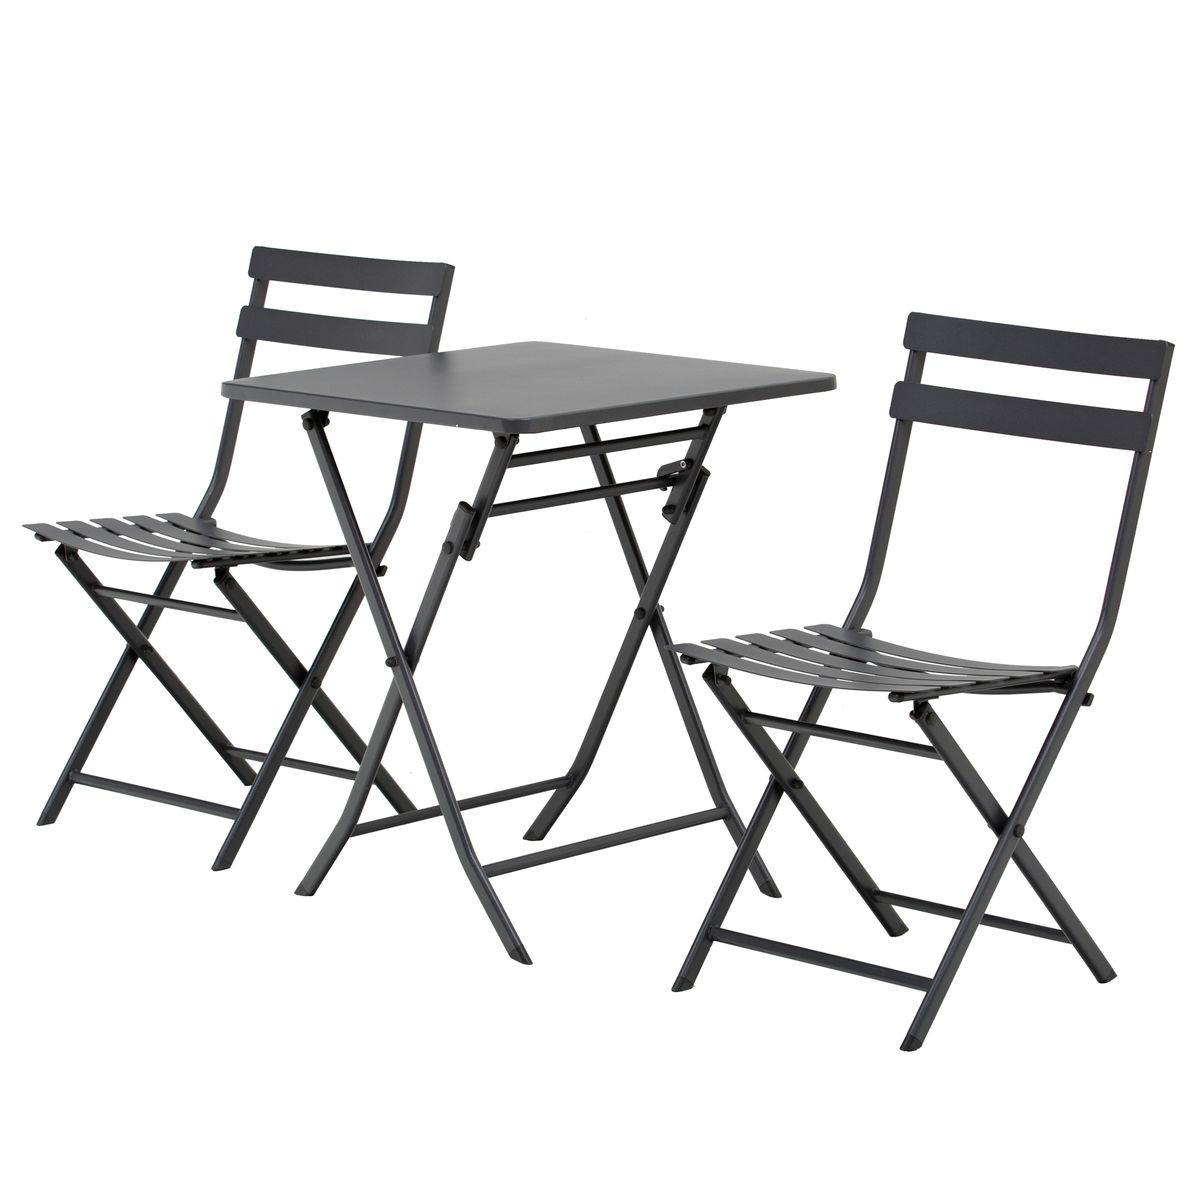 Outsunny - Salon de jardin bistro pliable - table ronde Ø 60 cm avec 2 chaises  pliantes - métal thermolaqué gris